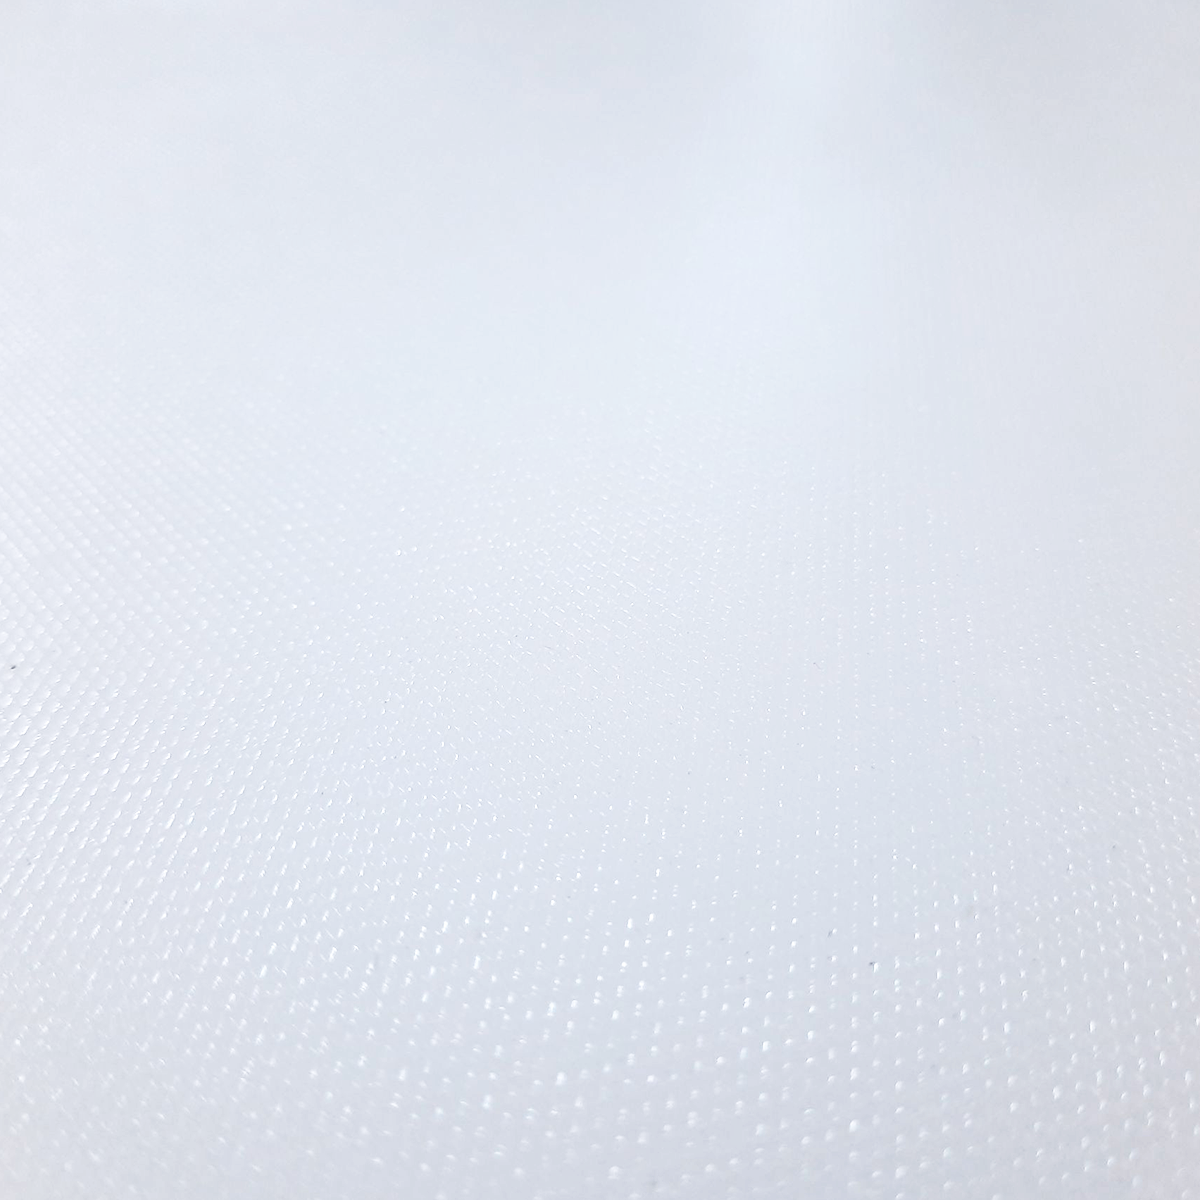 เขียงพลาสติก ทรงสี่เหลี่ยม ขนาด 40 x 60 x 3 ซม. สีขาว